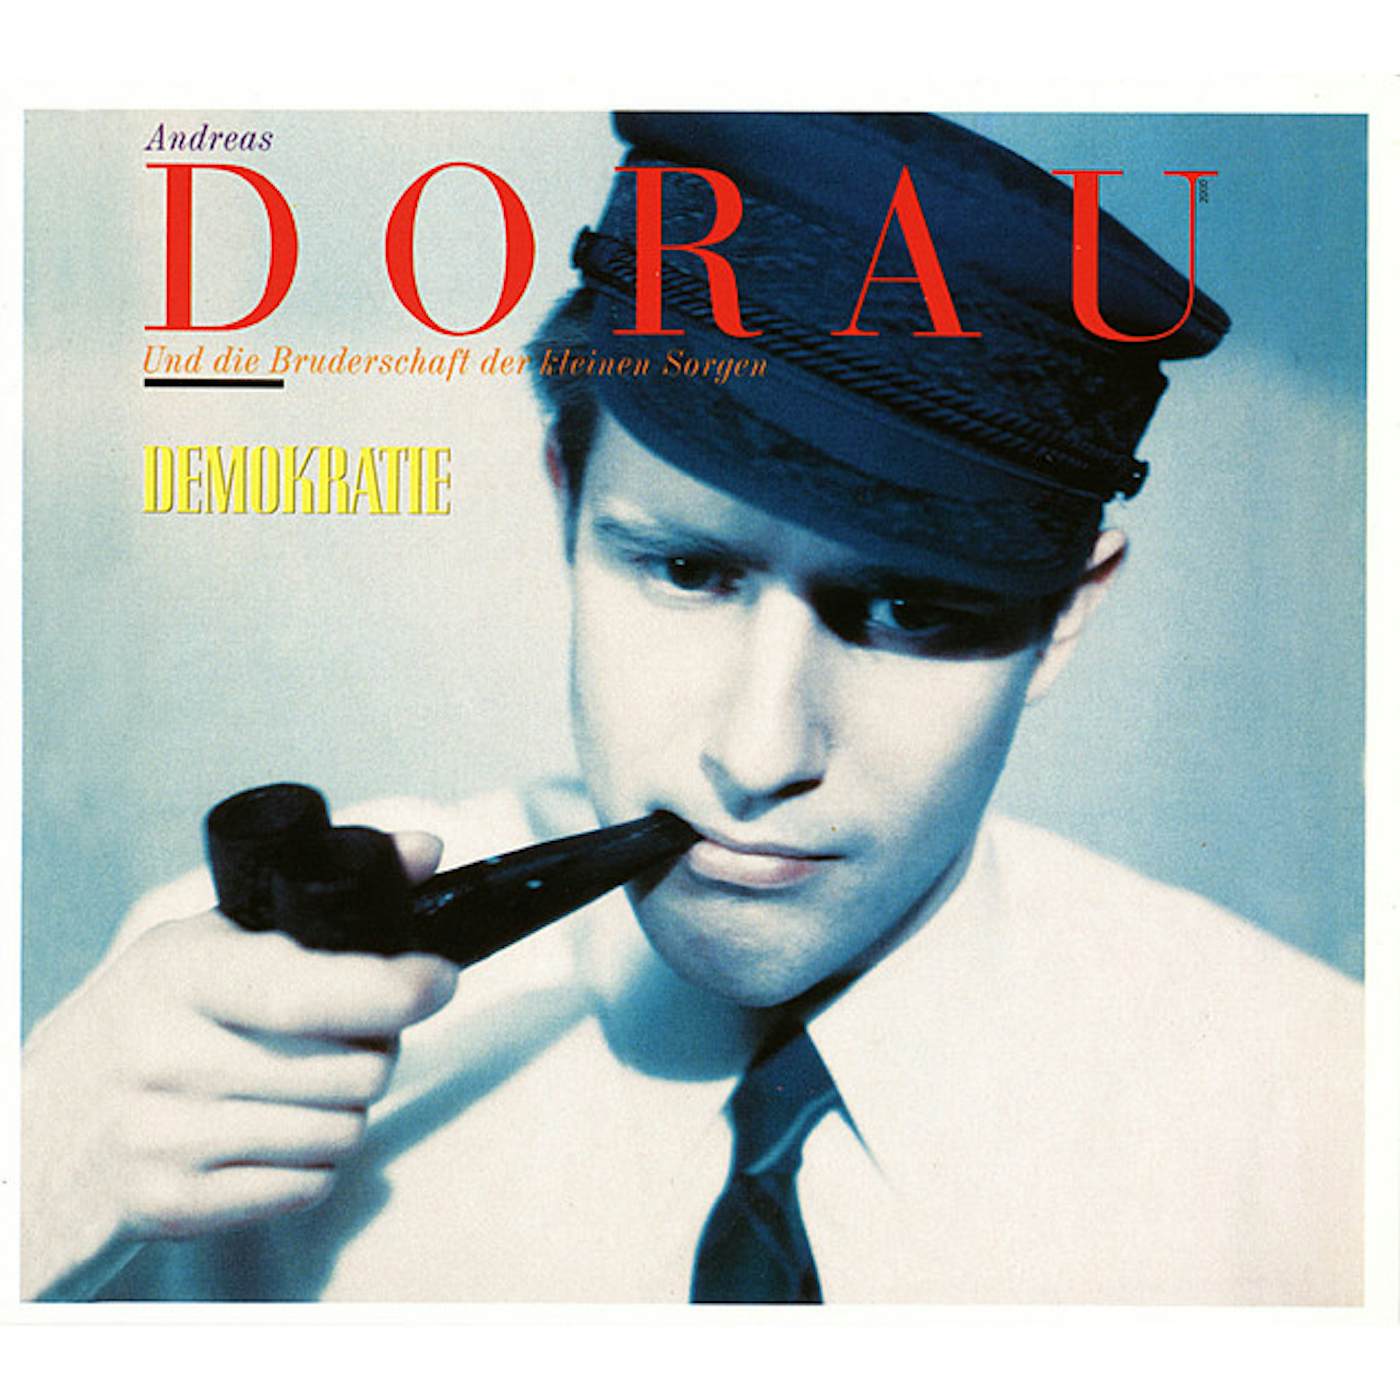 Andreas Dorau Demokratie Vinyl Record